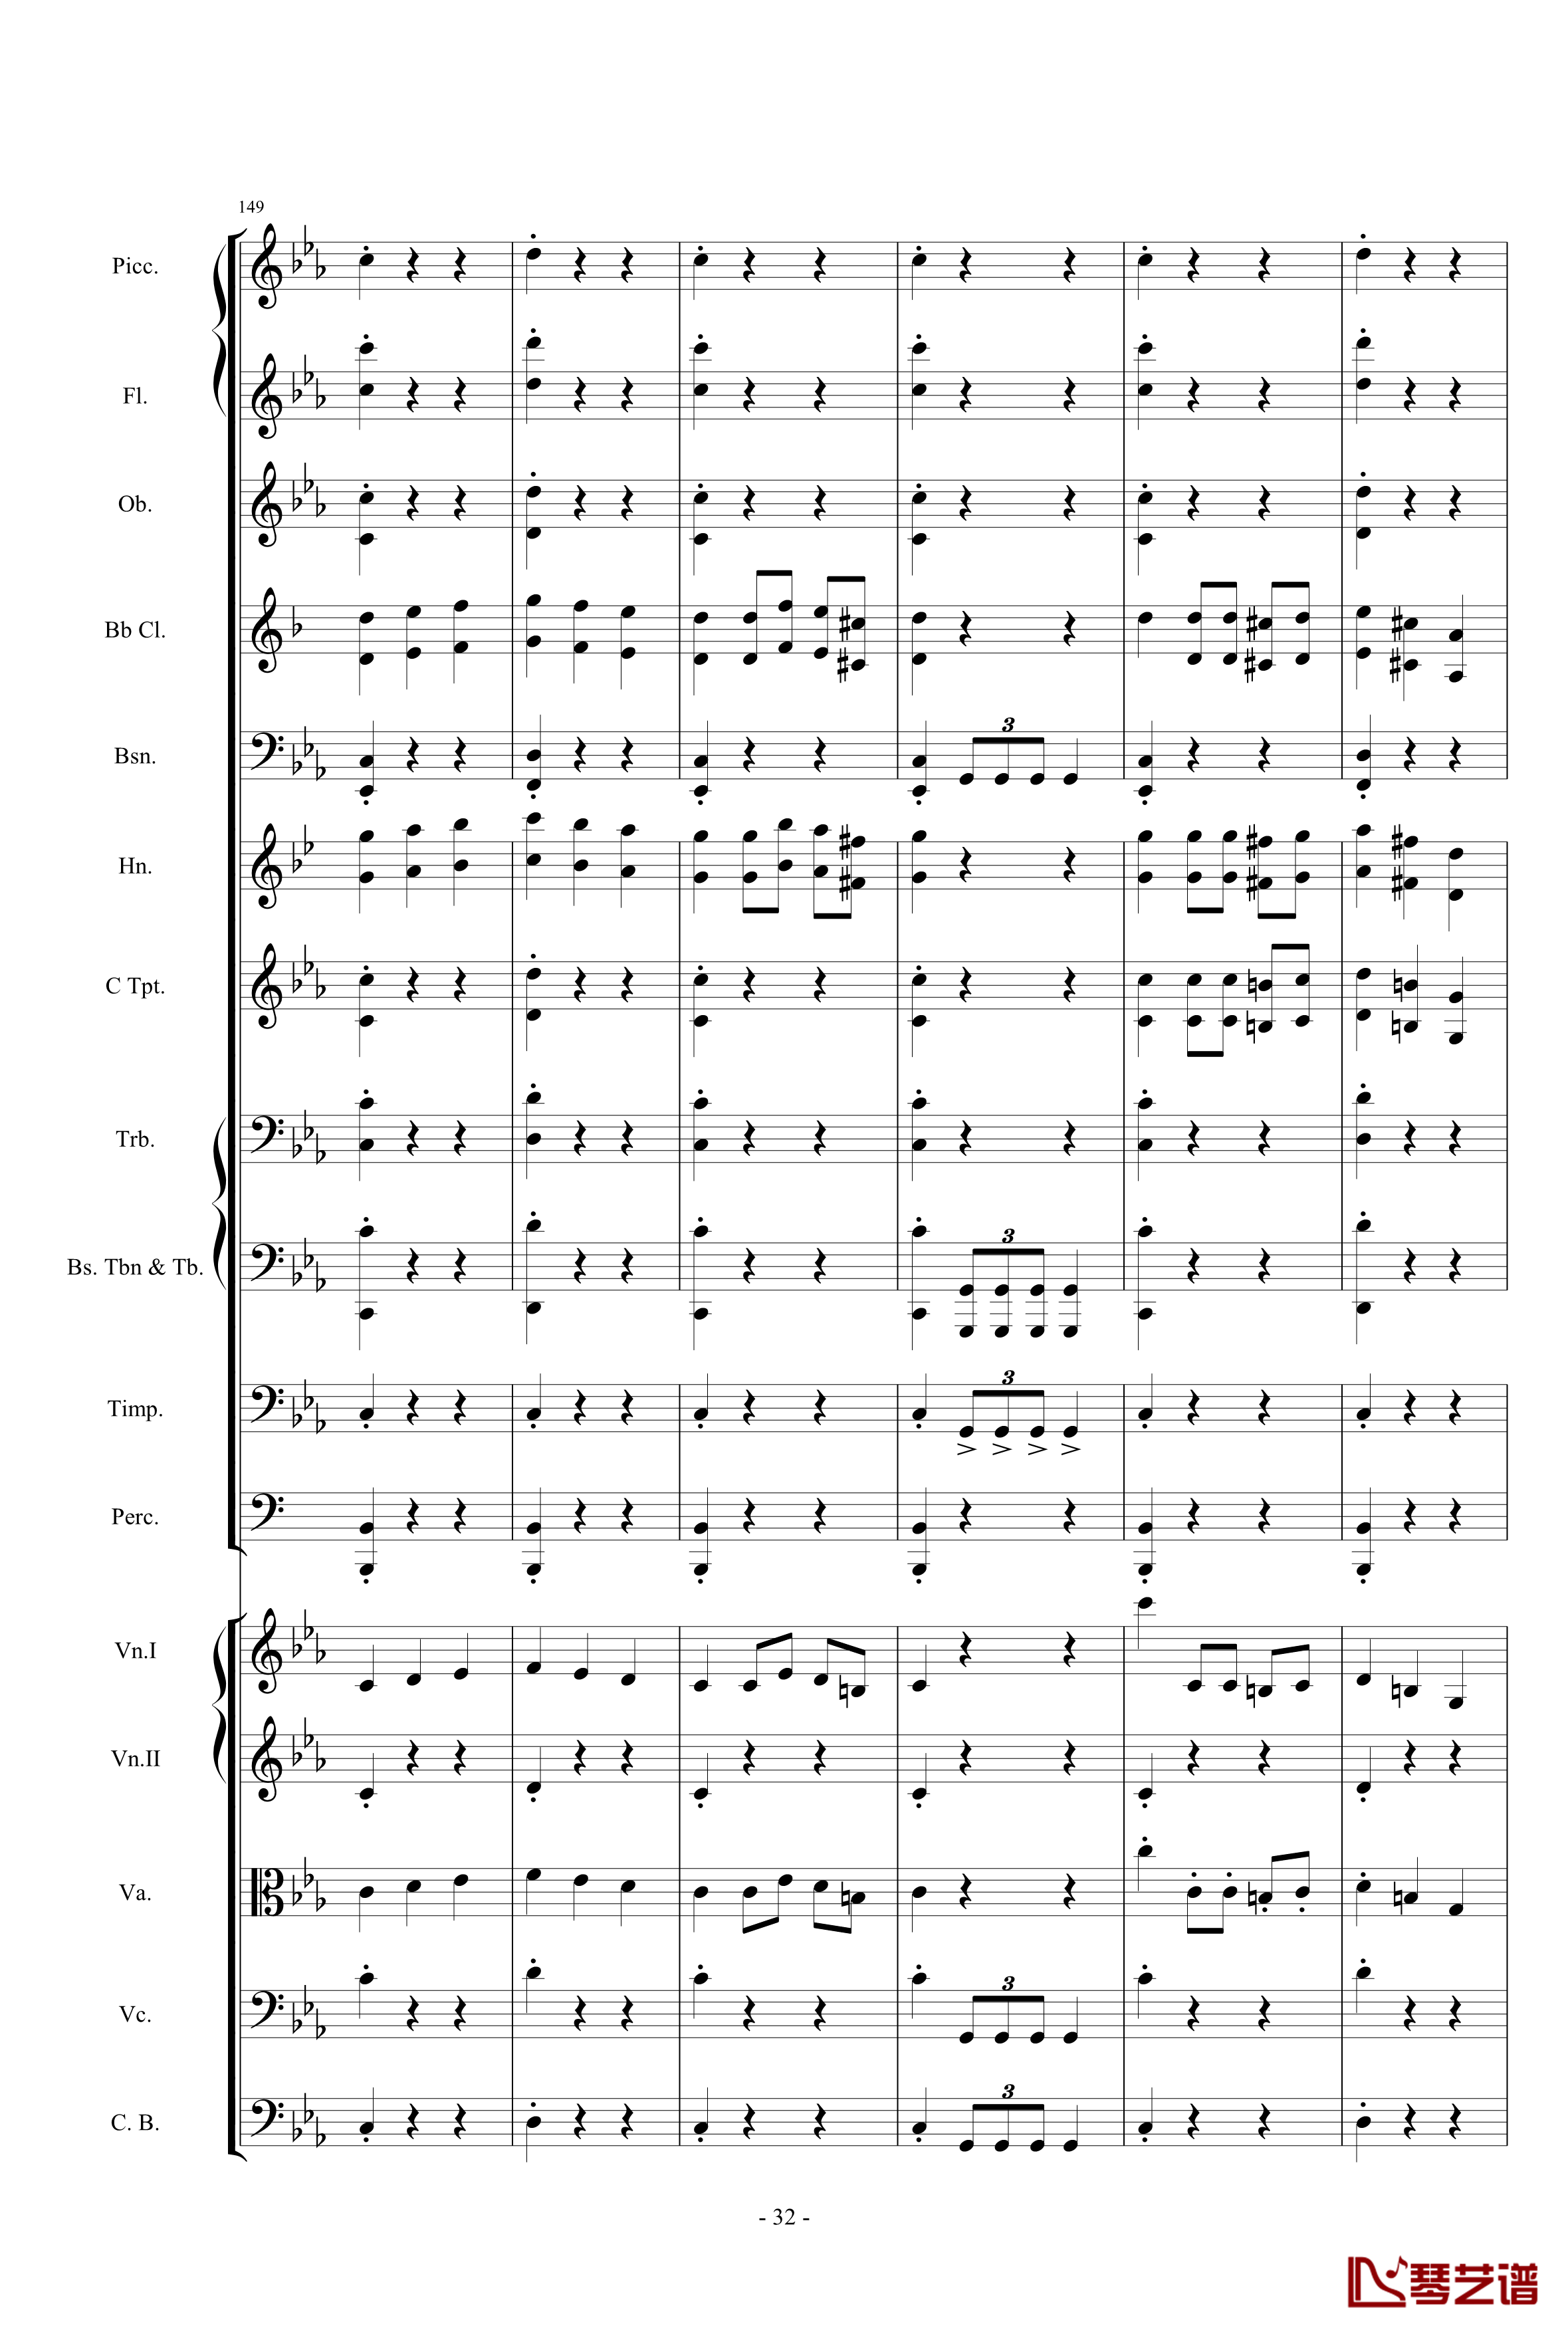 愤怒的小鸟交响曲第三乐章Op.5 no.3钢琴谱-1057257832